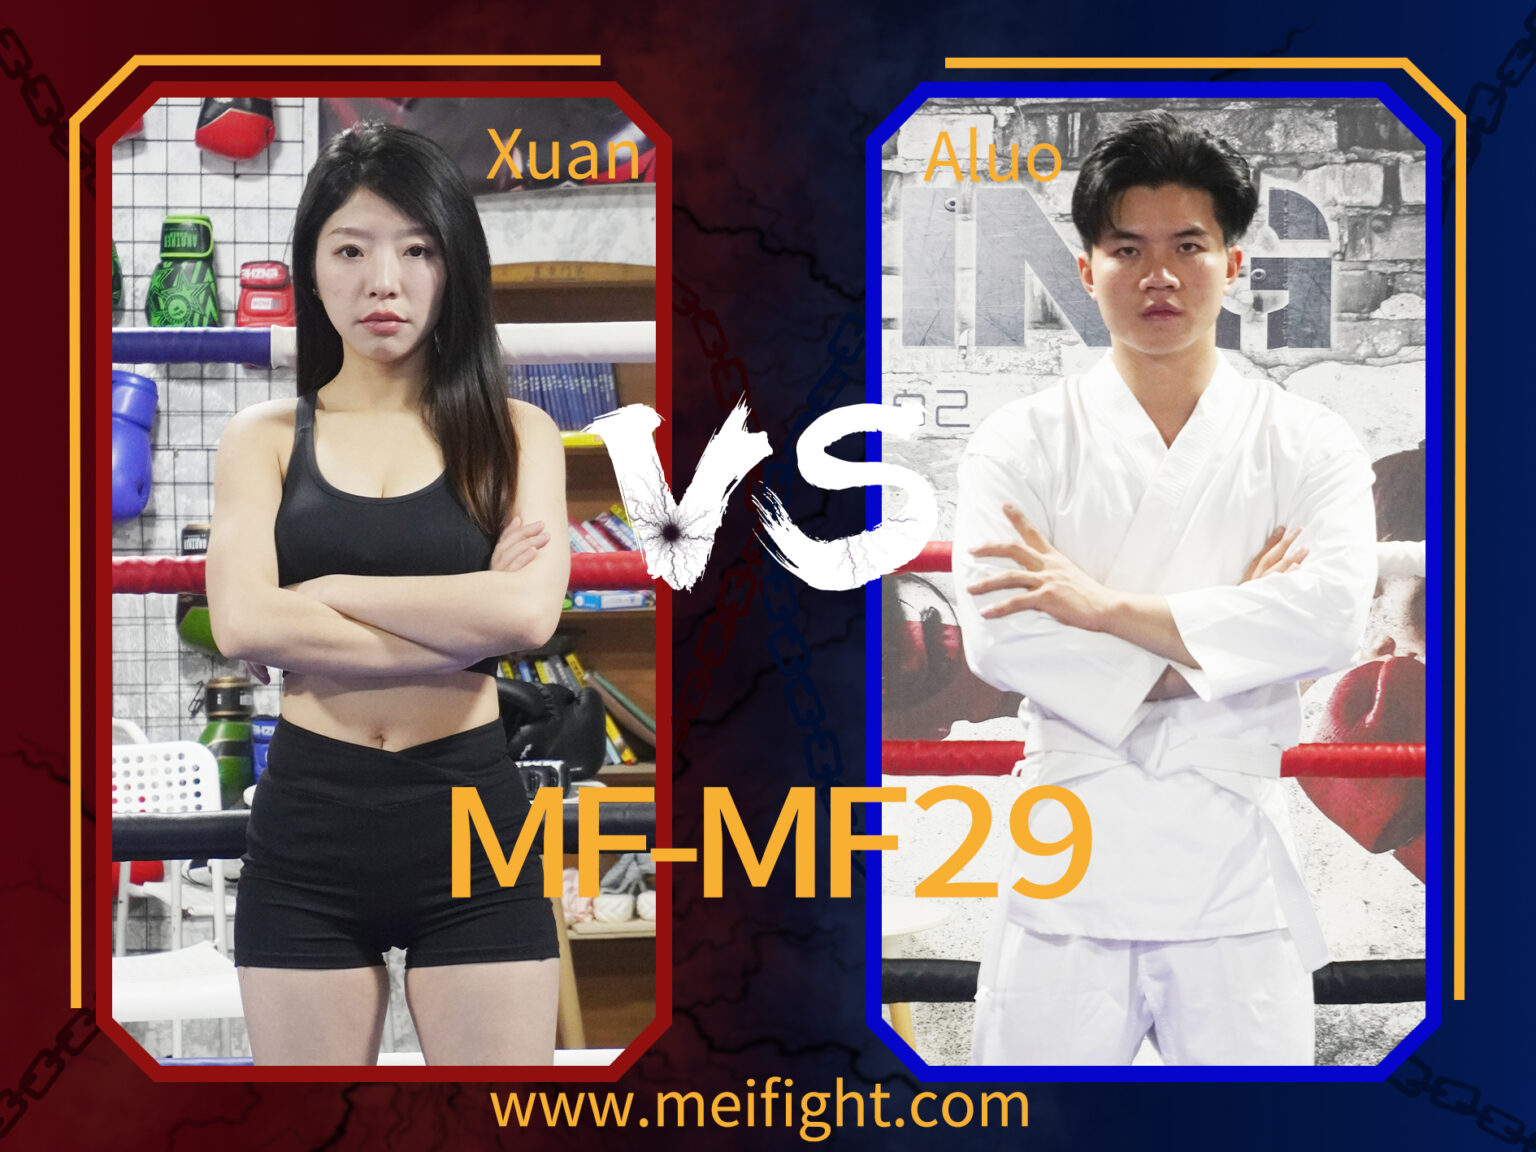 MF-MF29-Xuan VS Aluo